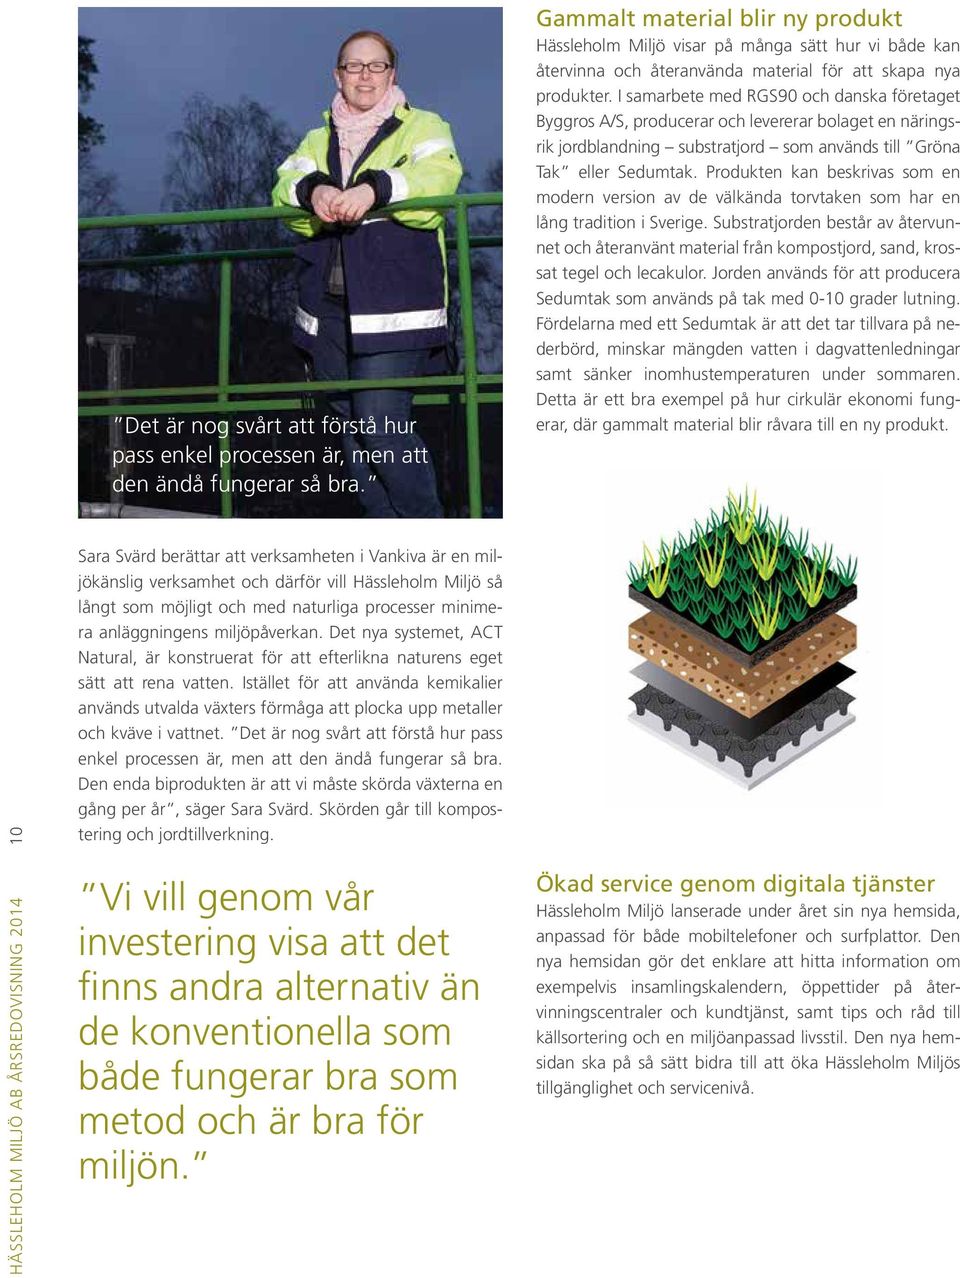 I samarbete med RGS90 och danska företaget Byggros A/S, producerar och levererar bolaget en näringsrik jordblandning substratjord som används till Gröna Tak eller Sedumtak.